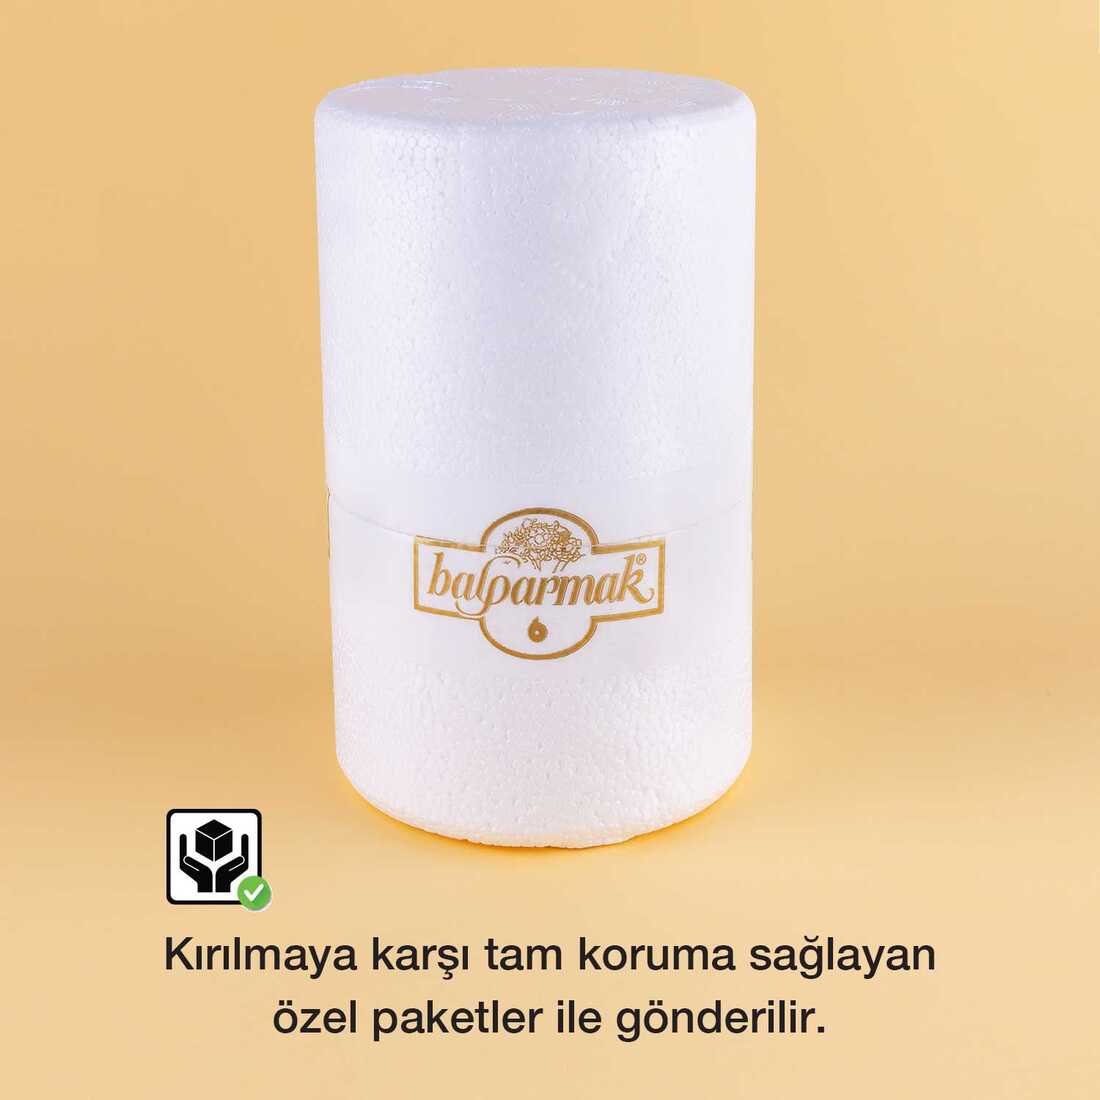 Balparmak Anadolu Lezzetleri Kayseri Çiçek Balı 460 g - 5